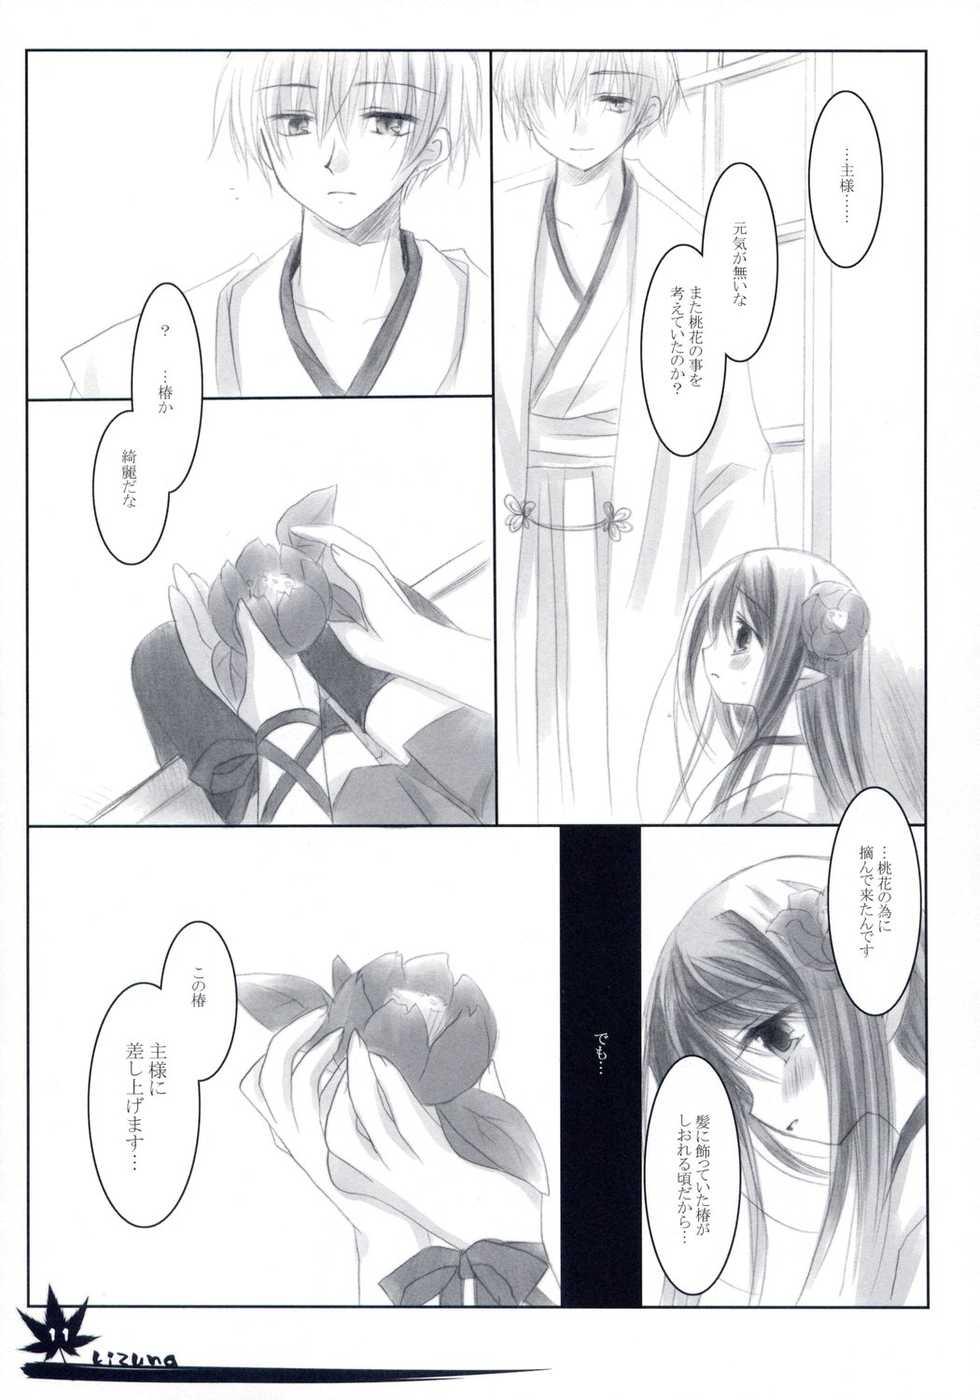 [Chronolog] - Kizuna - Page 10